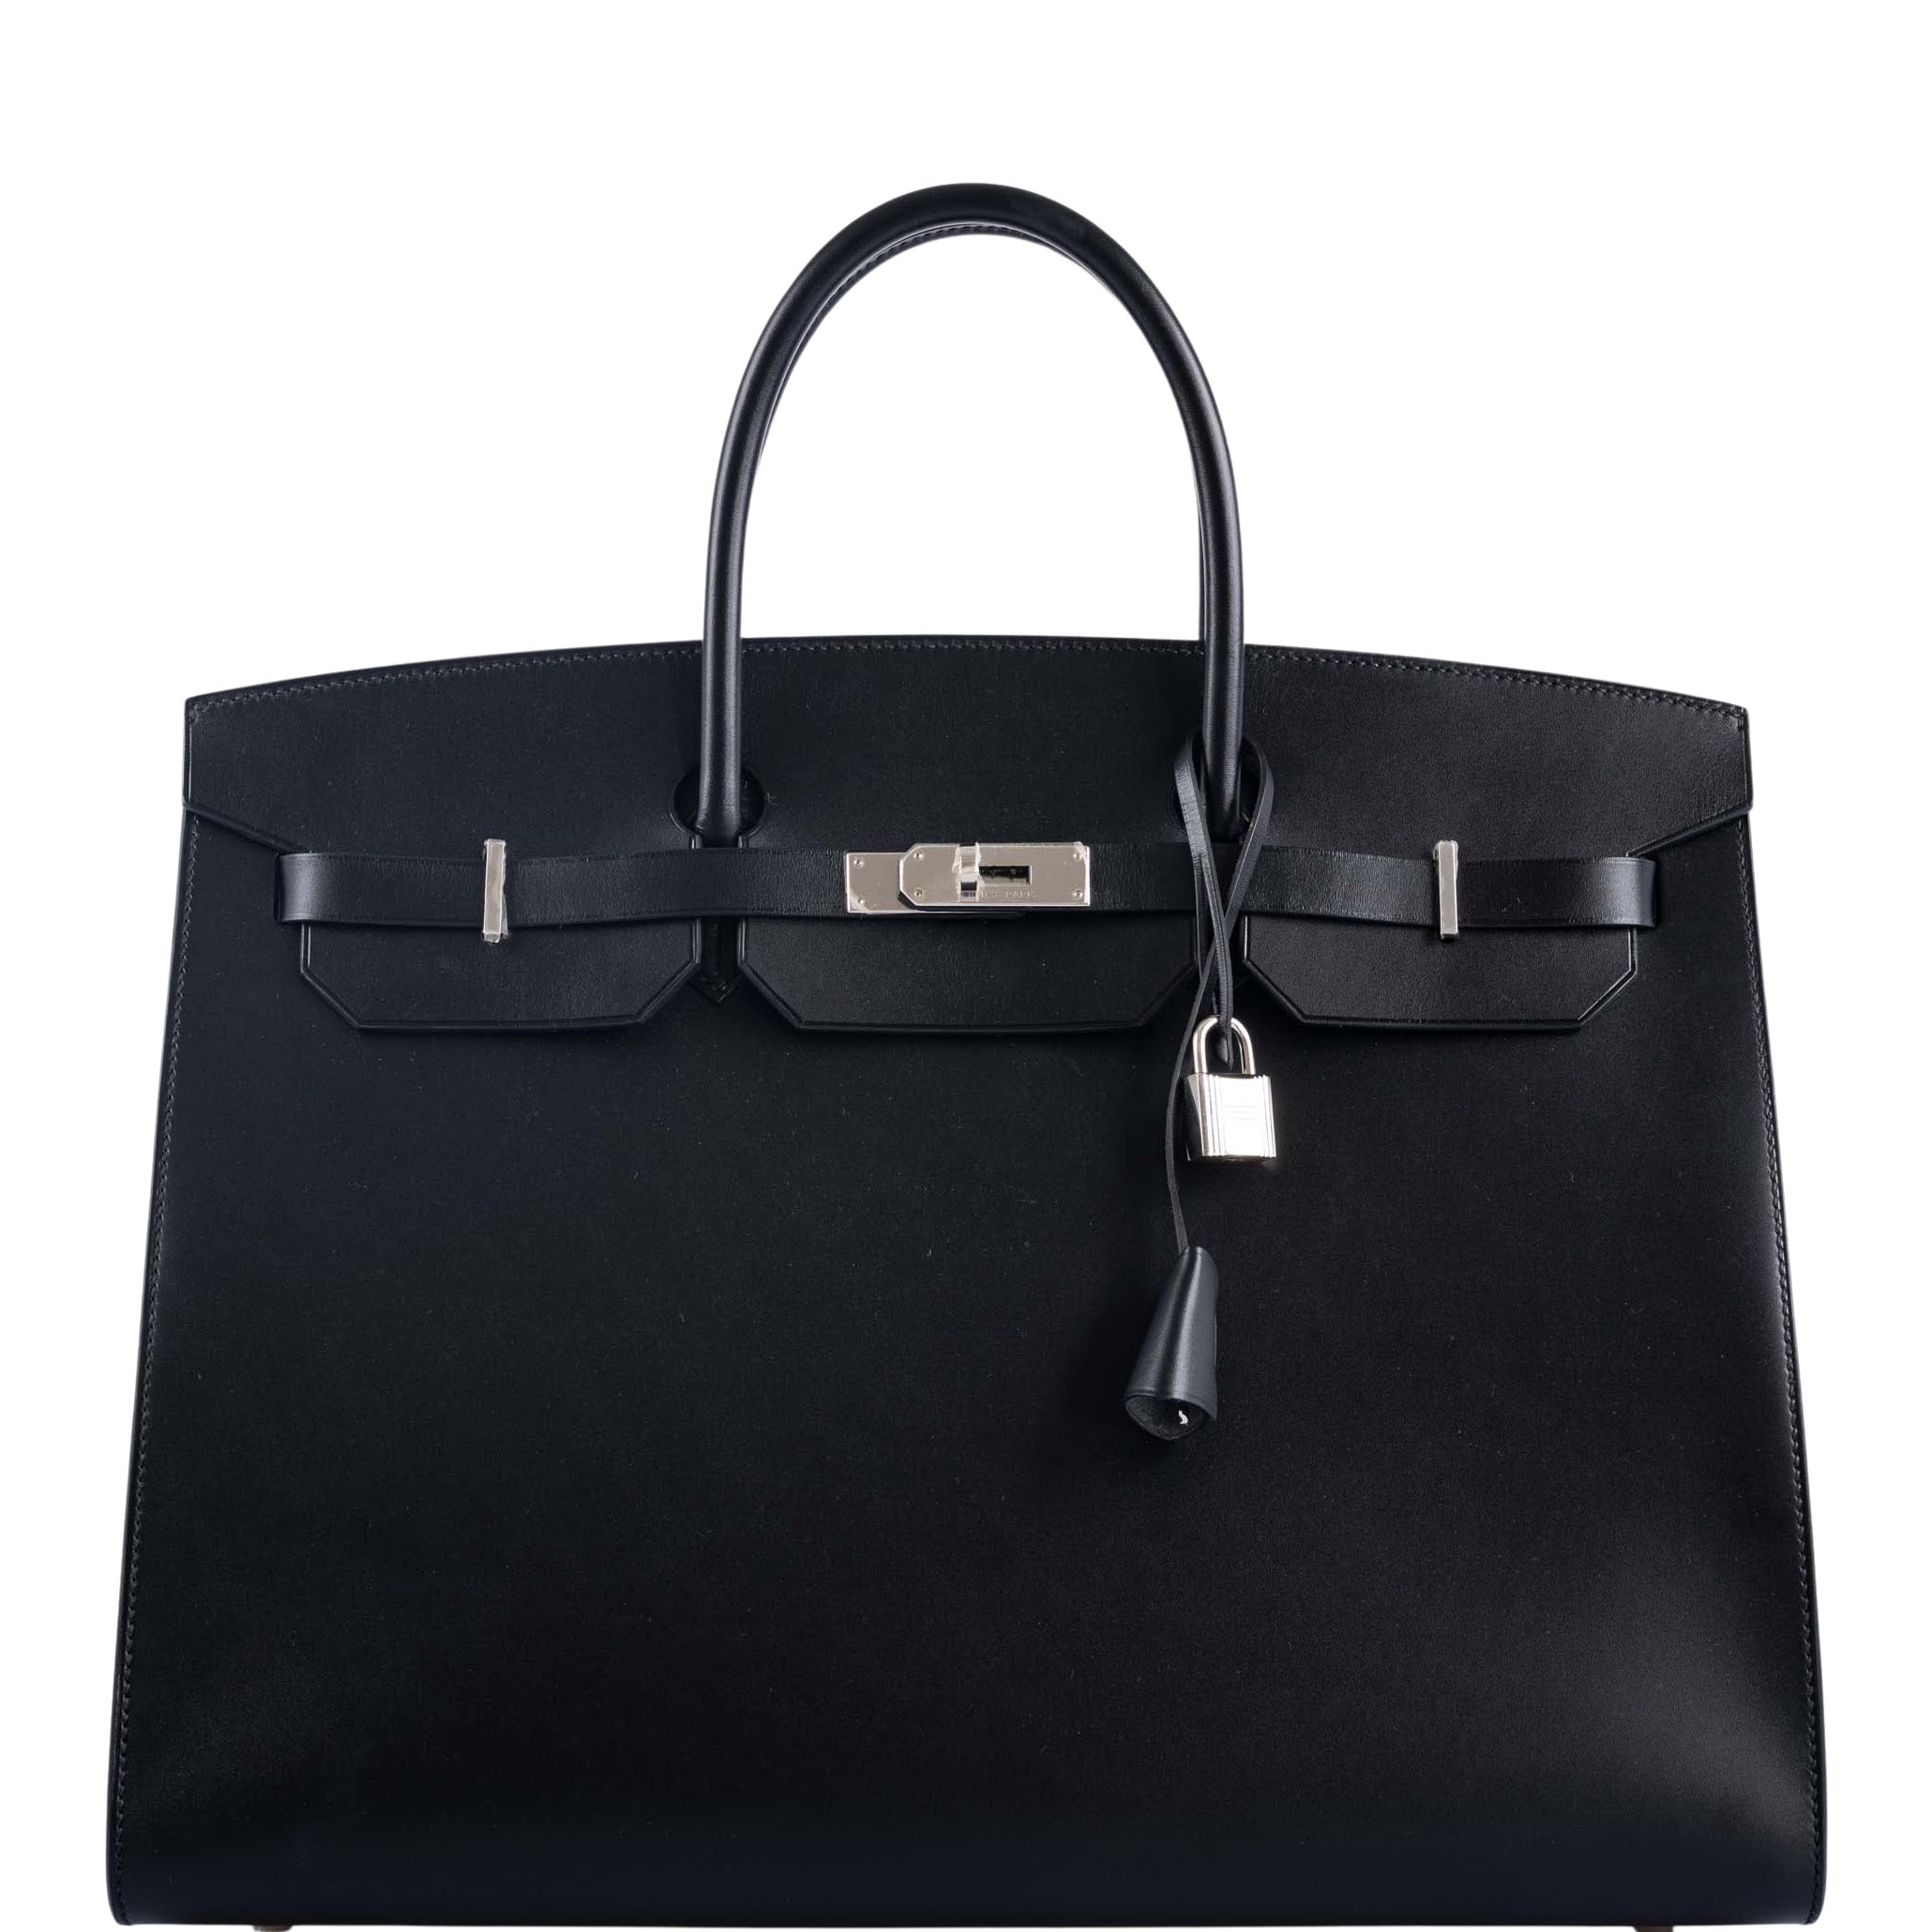 Hermès Birkin Bags: 20, 25, 30, 35 & 40cm, Baby Birkin | JaneFinds – Page 2